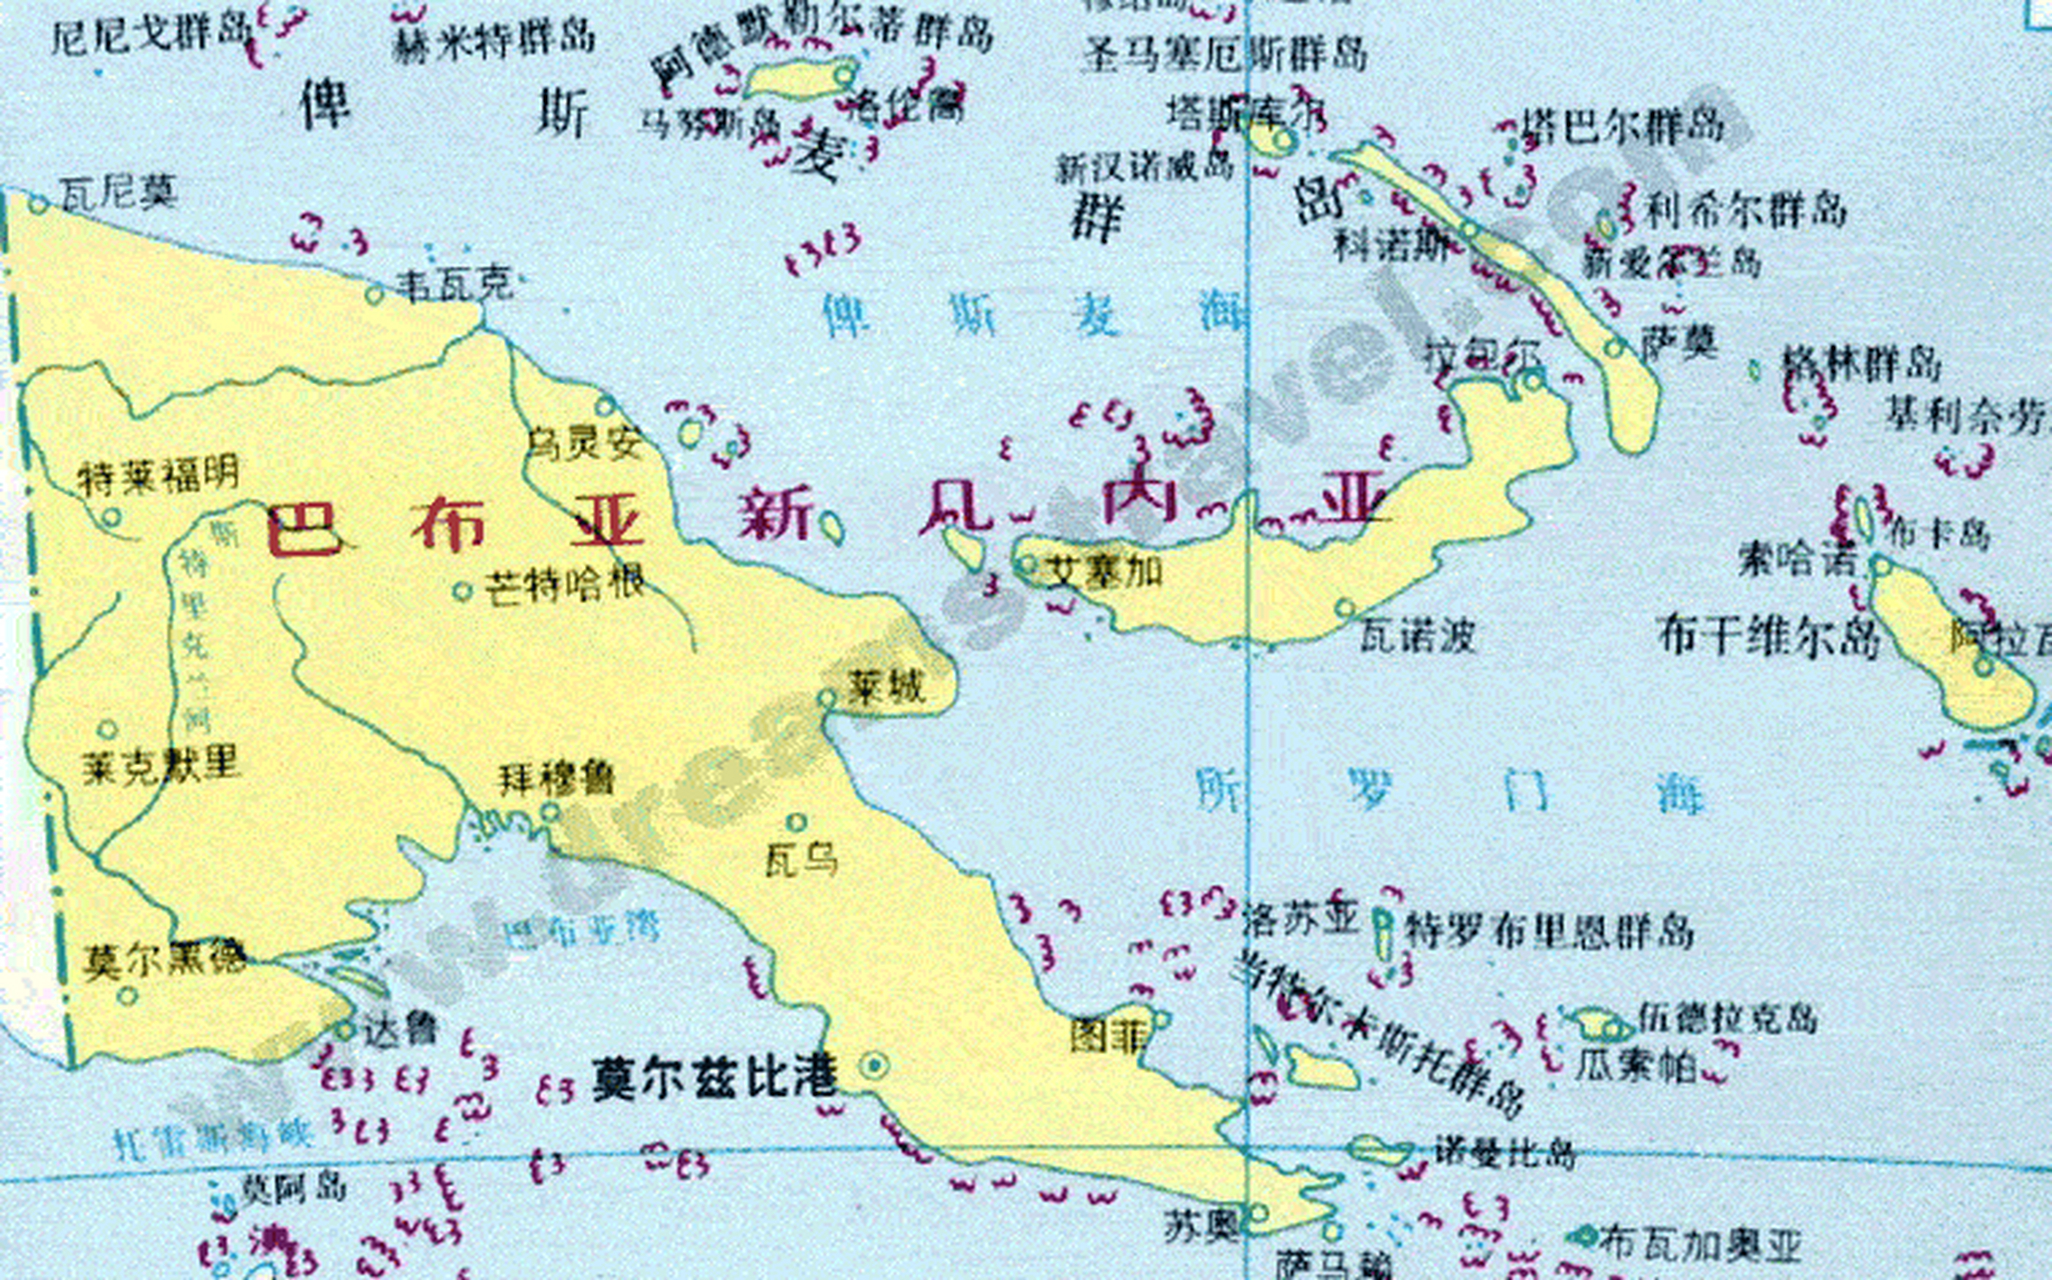 【海战回顾】所罗门海海战 所罗门海属于西南太平洋的